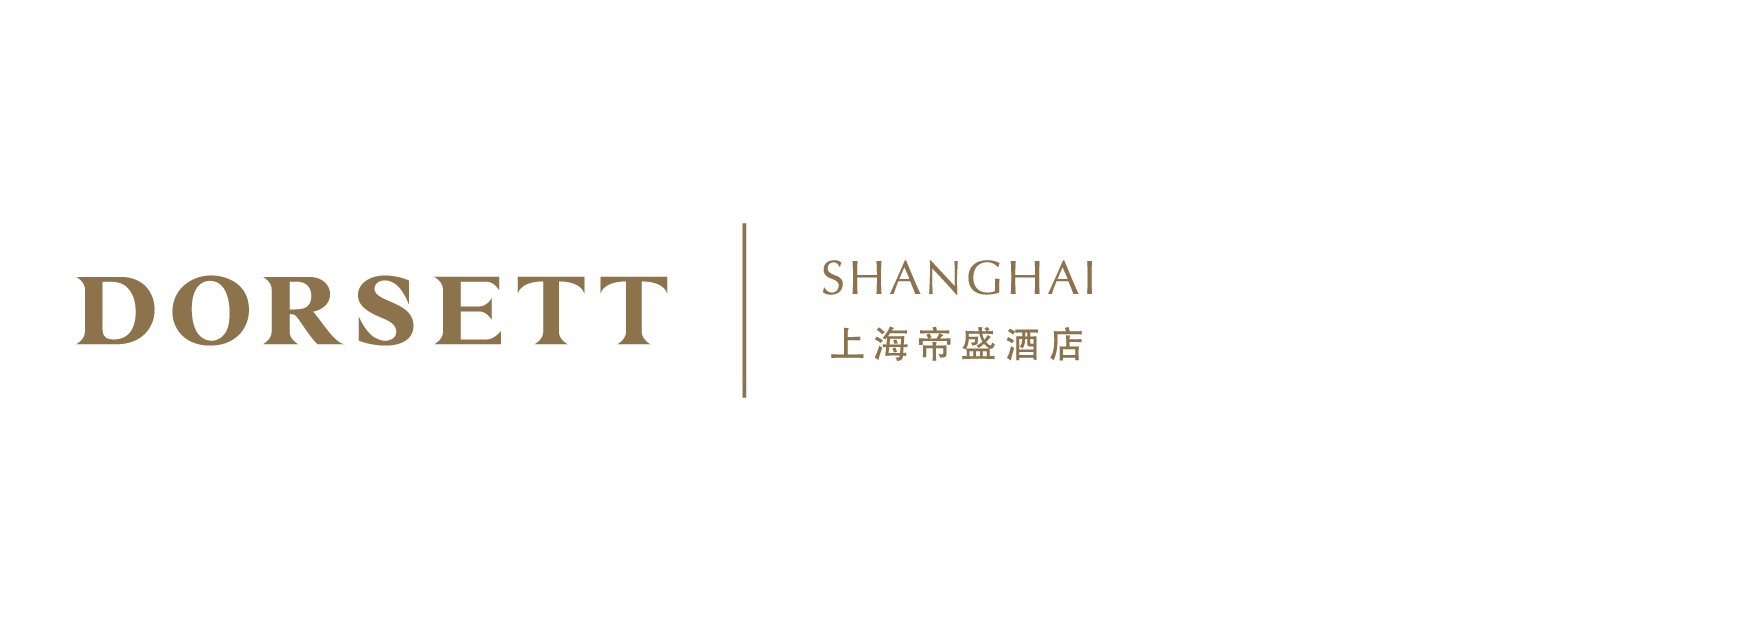 Dorsett Shanghai